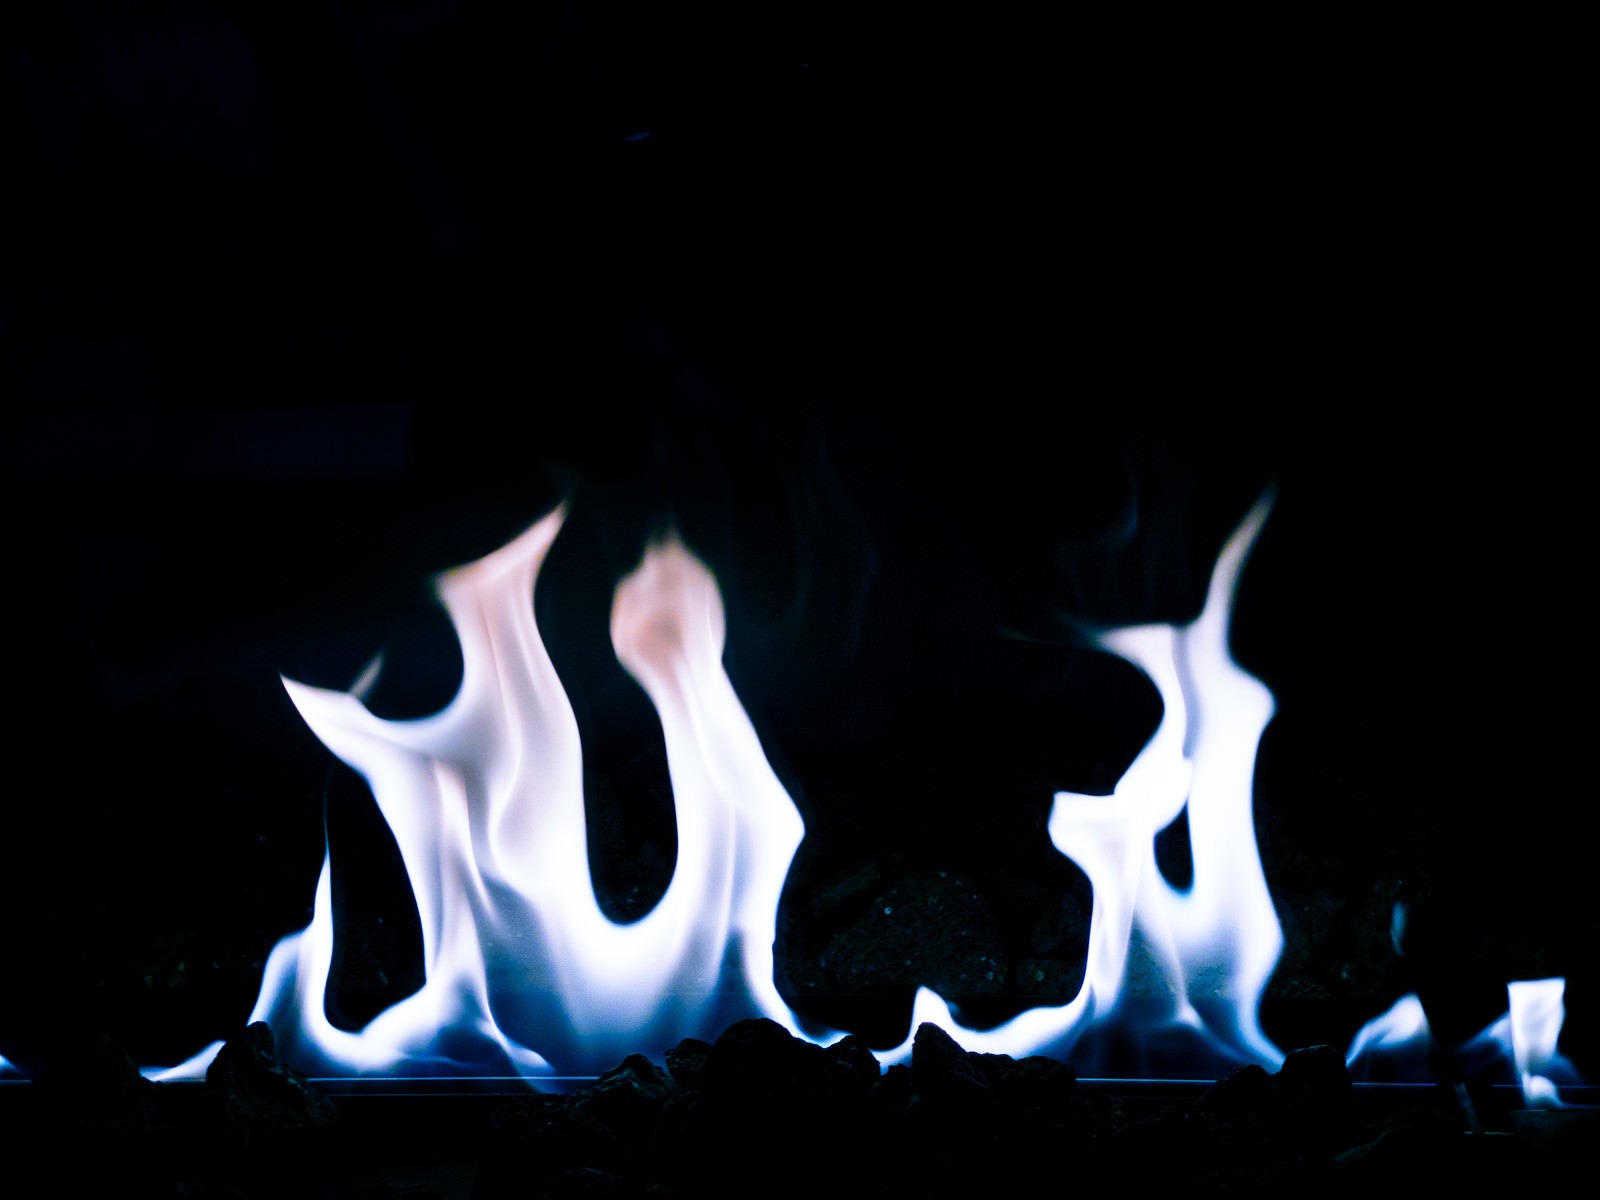 「不気味な青白い炎がメラメラ燃える」の写真